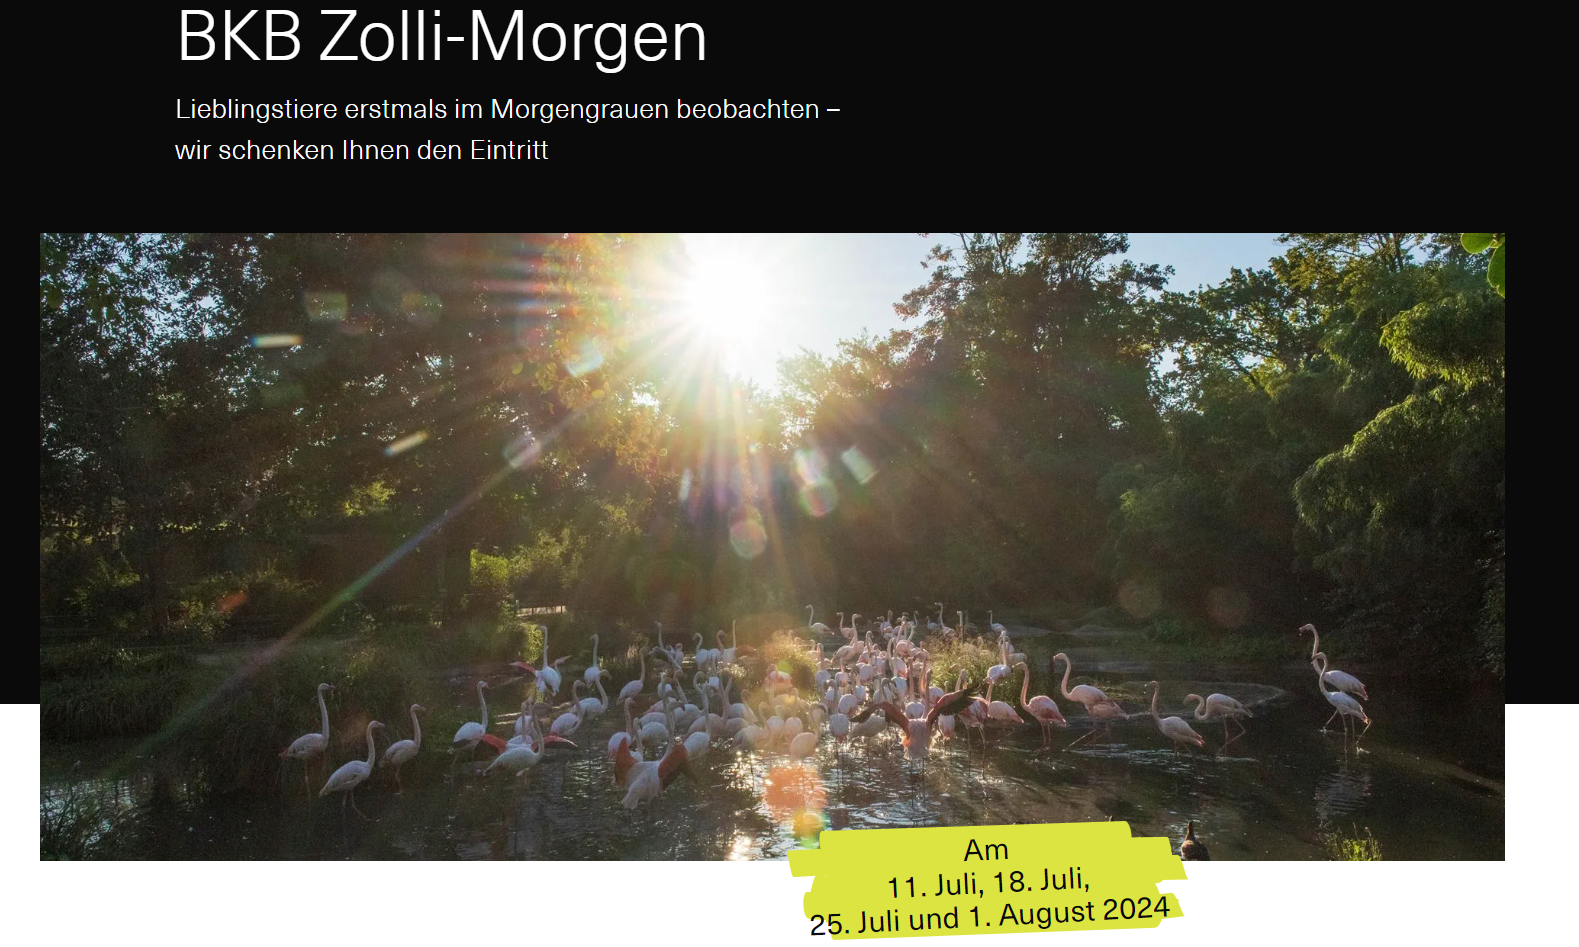 Gratisbesuch im Zoo Basel 18. Juli, 25. Juli, 1. August von 5-8 Uhr inkl. Getränk, Gipfeli und Tagesticket